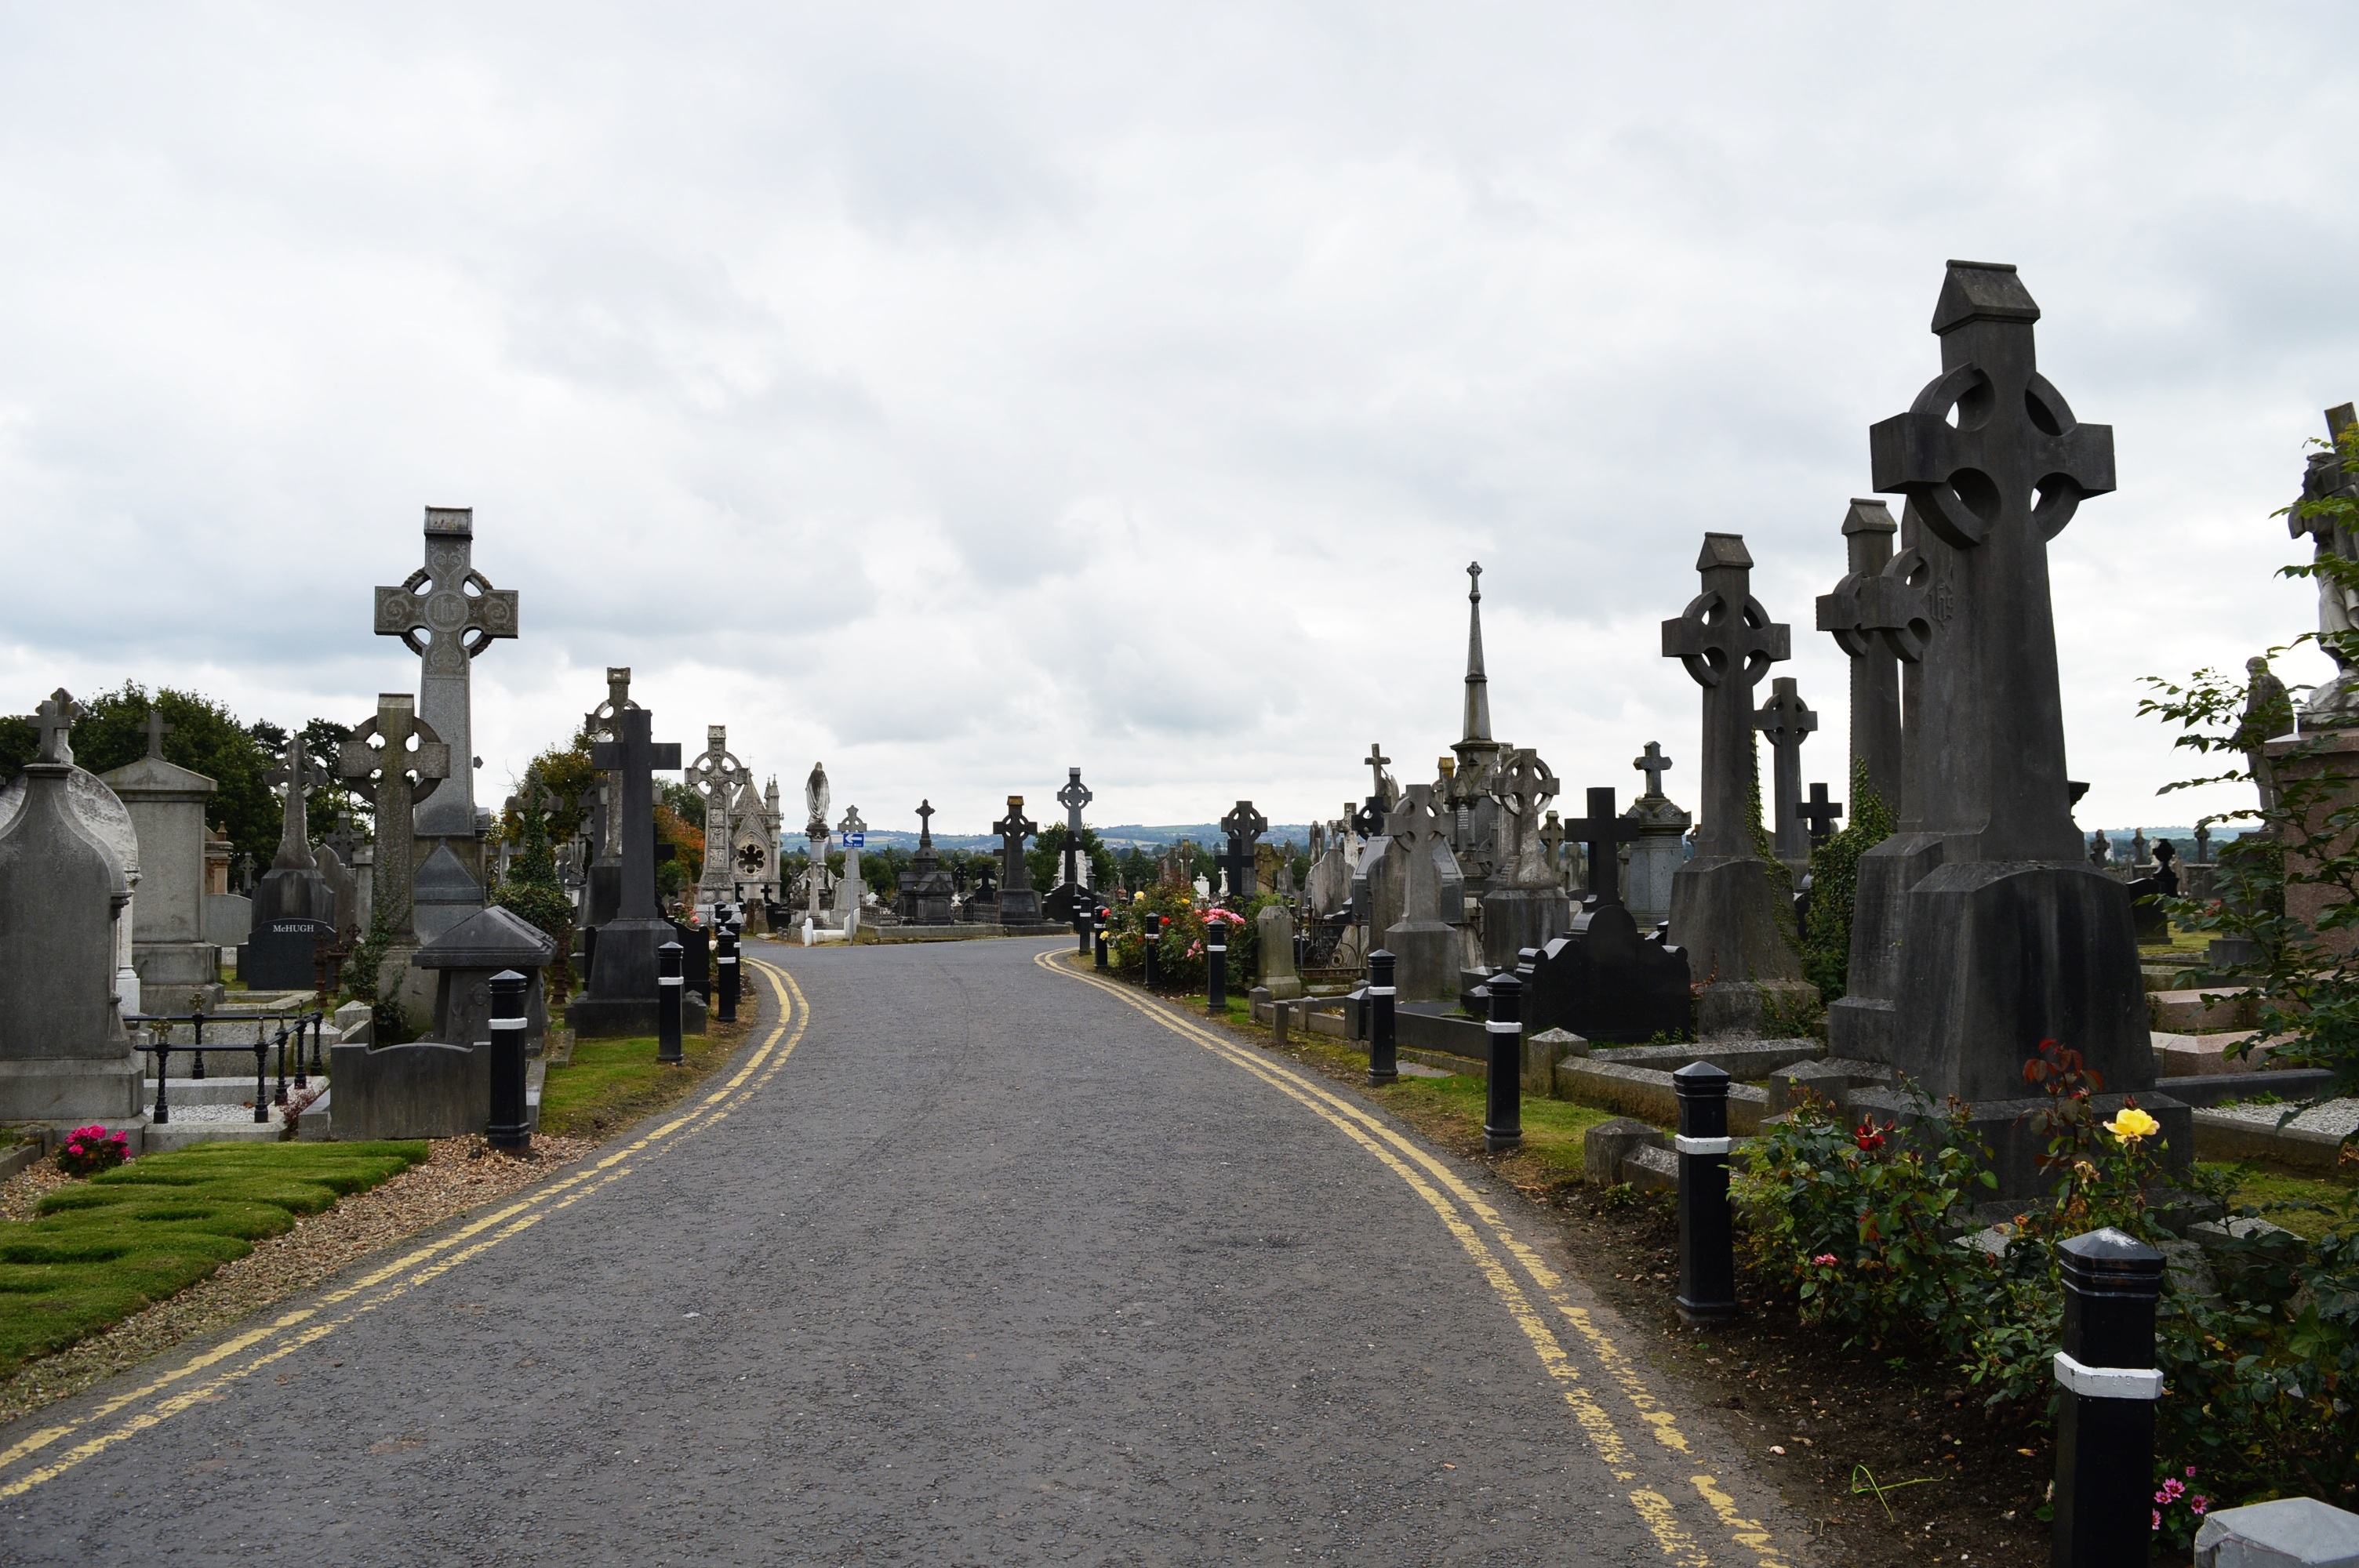 religious, cemetery, cross, grave, headstone, road